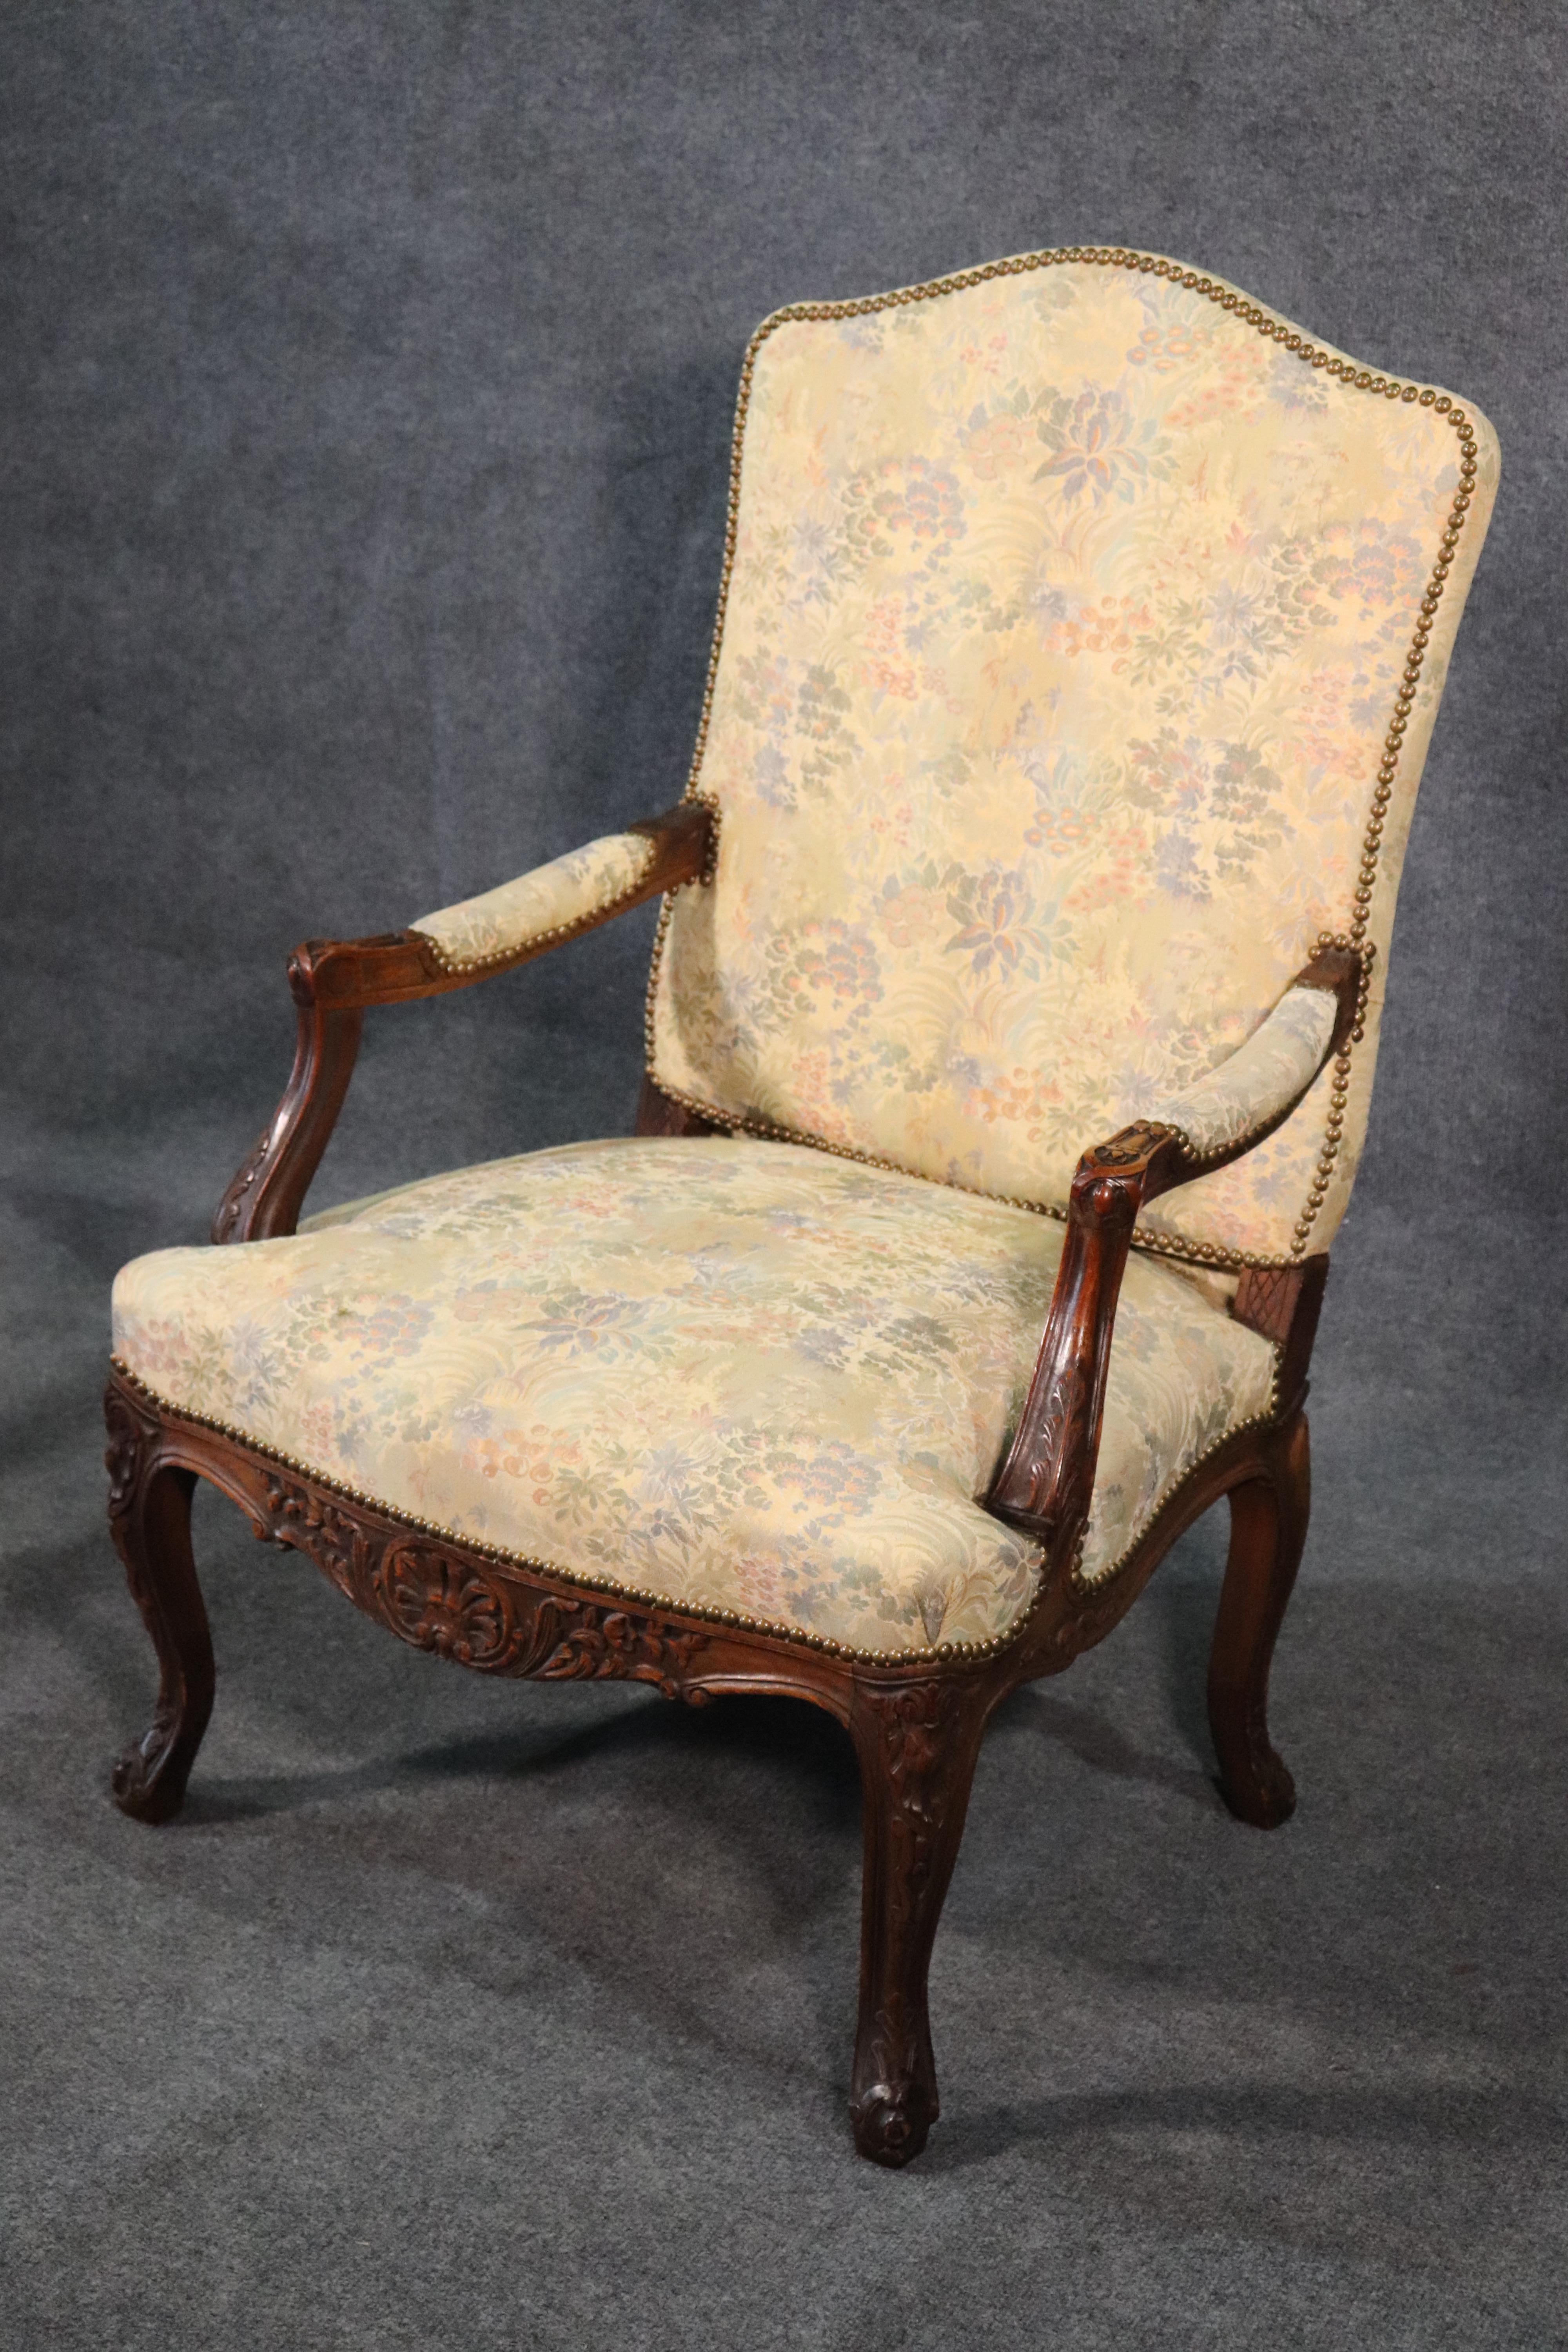 Il s'agit d'un fauteuil anglais de belle qualité datant des années 1930, conçu à la manière géorgienne. Le fauteuil est en très bon état et présente une tapisserie d'ameublement à la machine et des garnitures en tête de clou. La chaise mesure
42